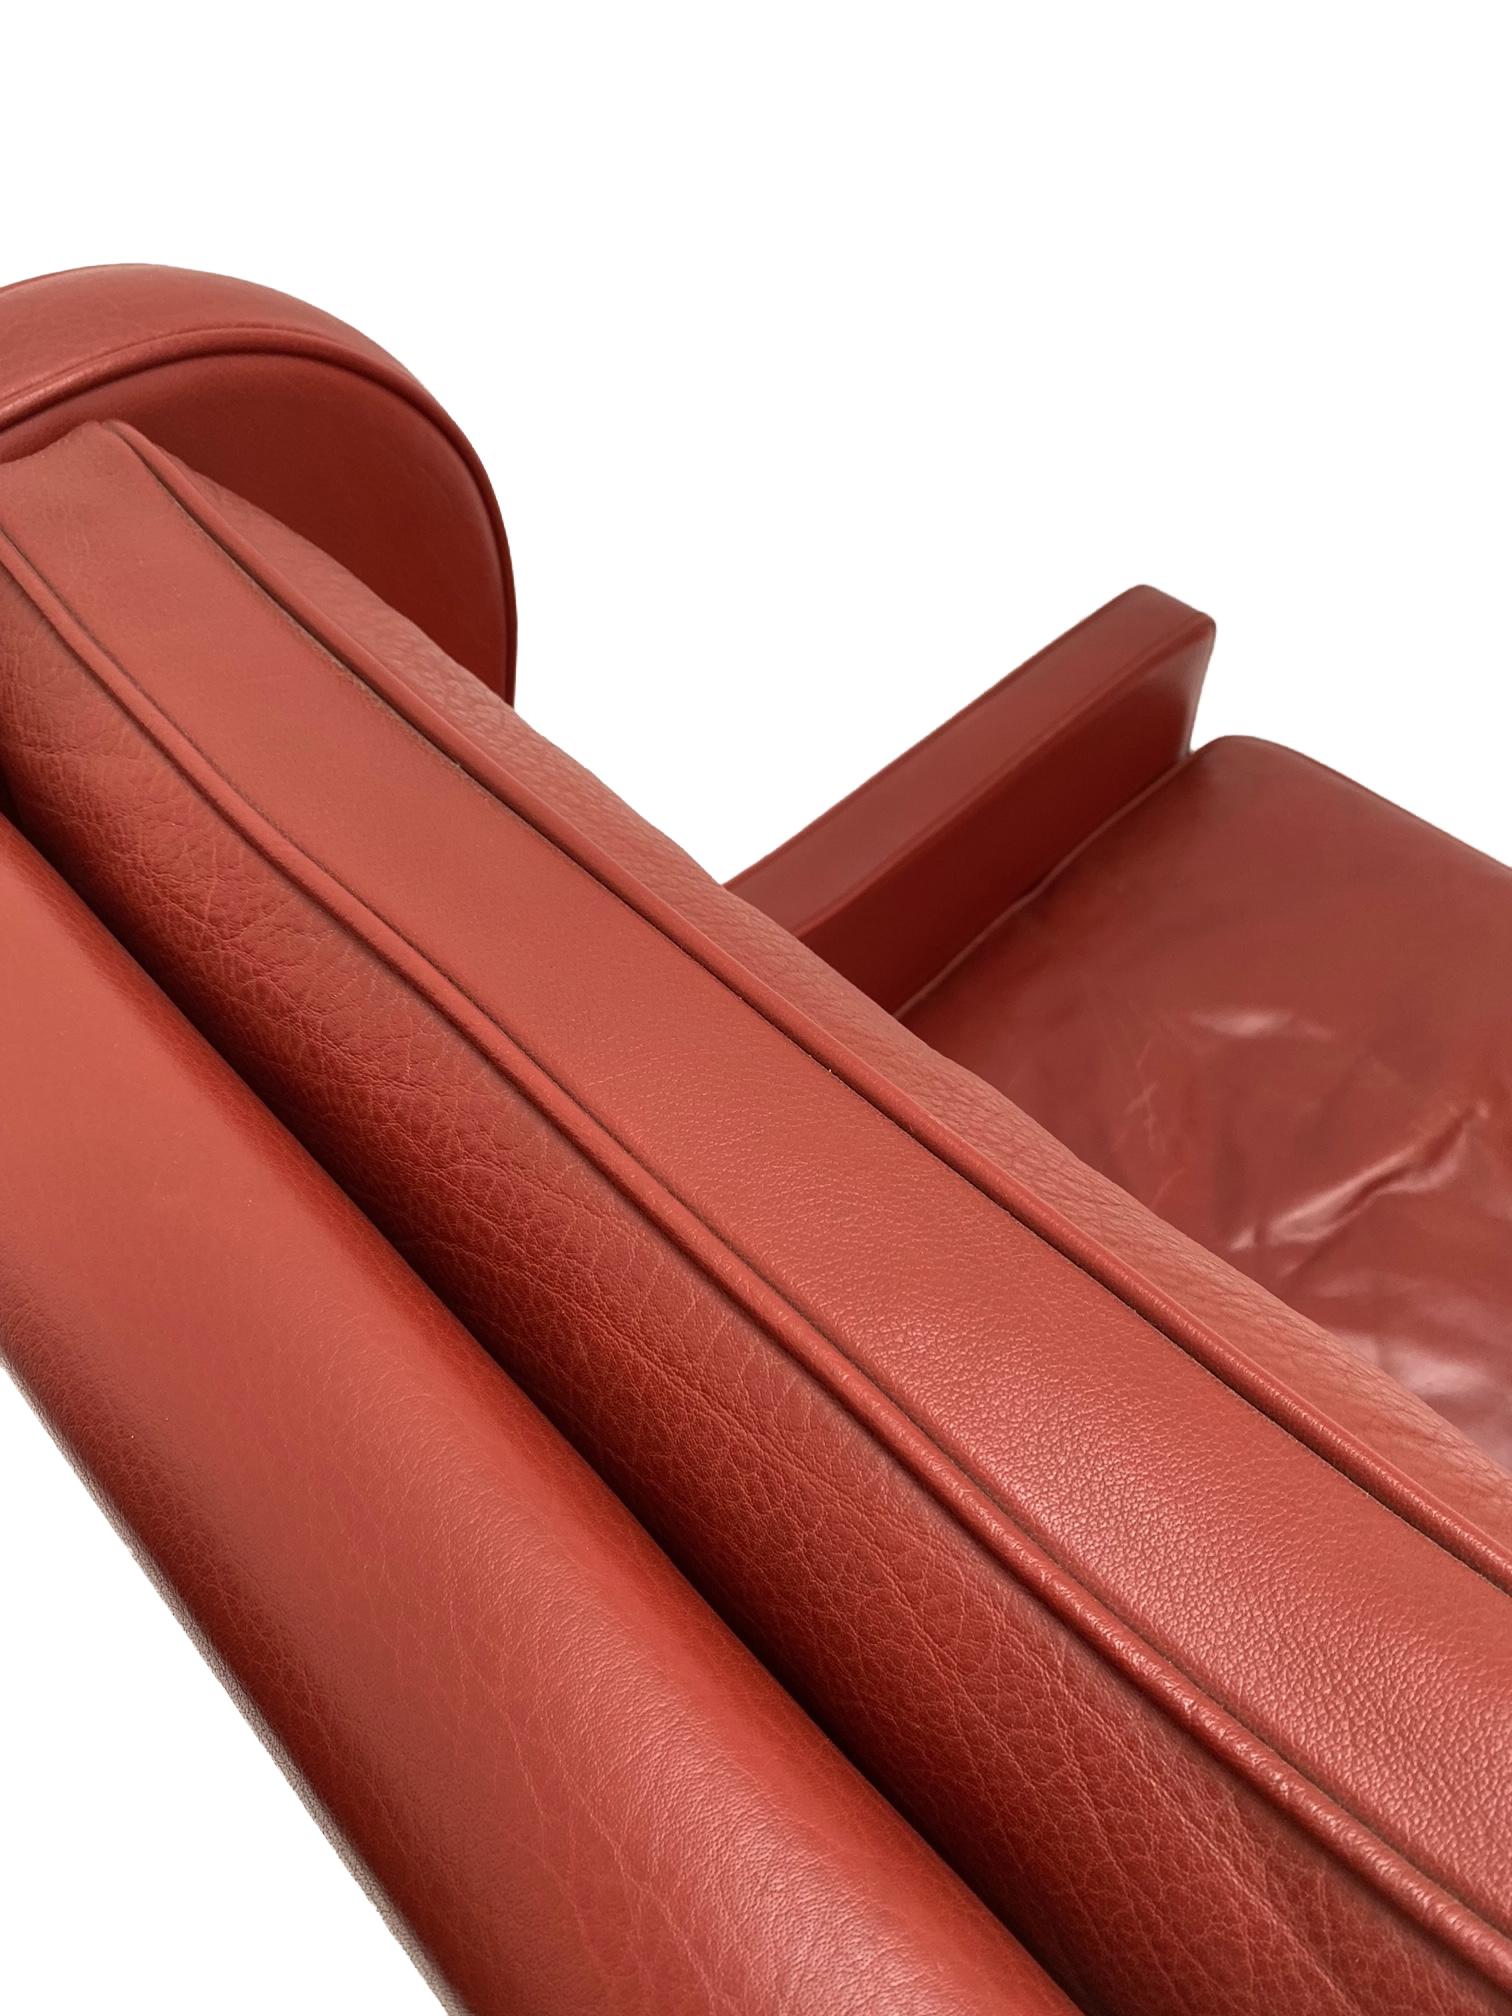 Mogens Hansen Red Leather & Oak Highback Armchair, Denmark, 1960s 2